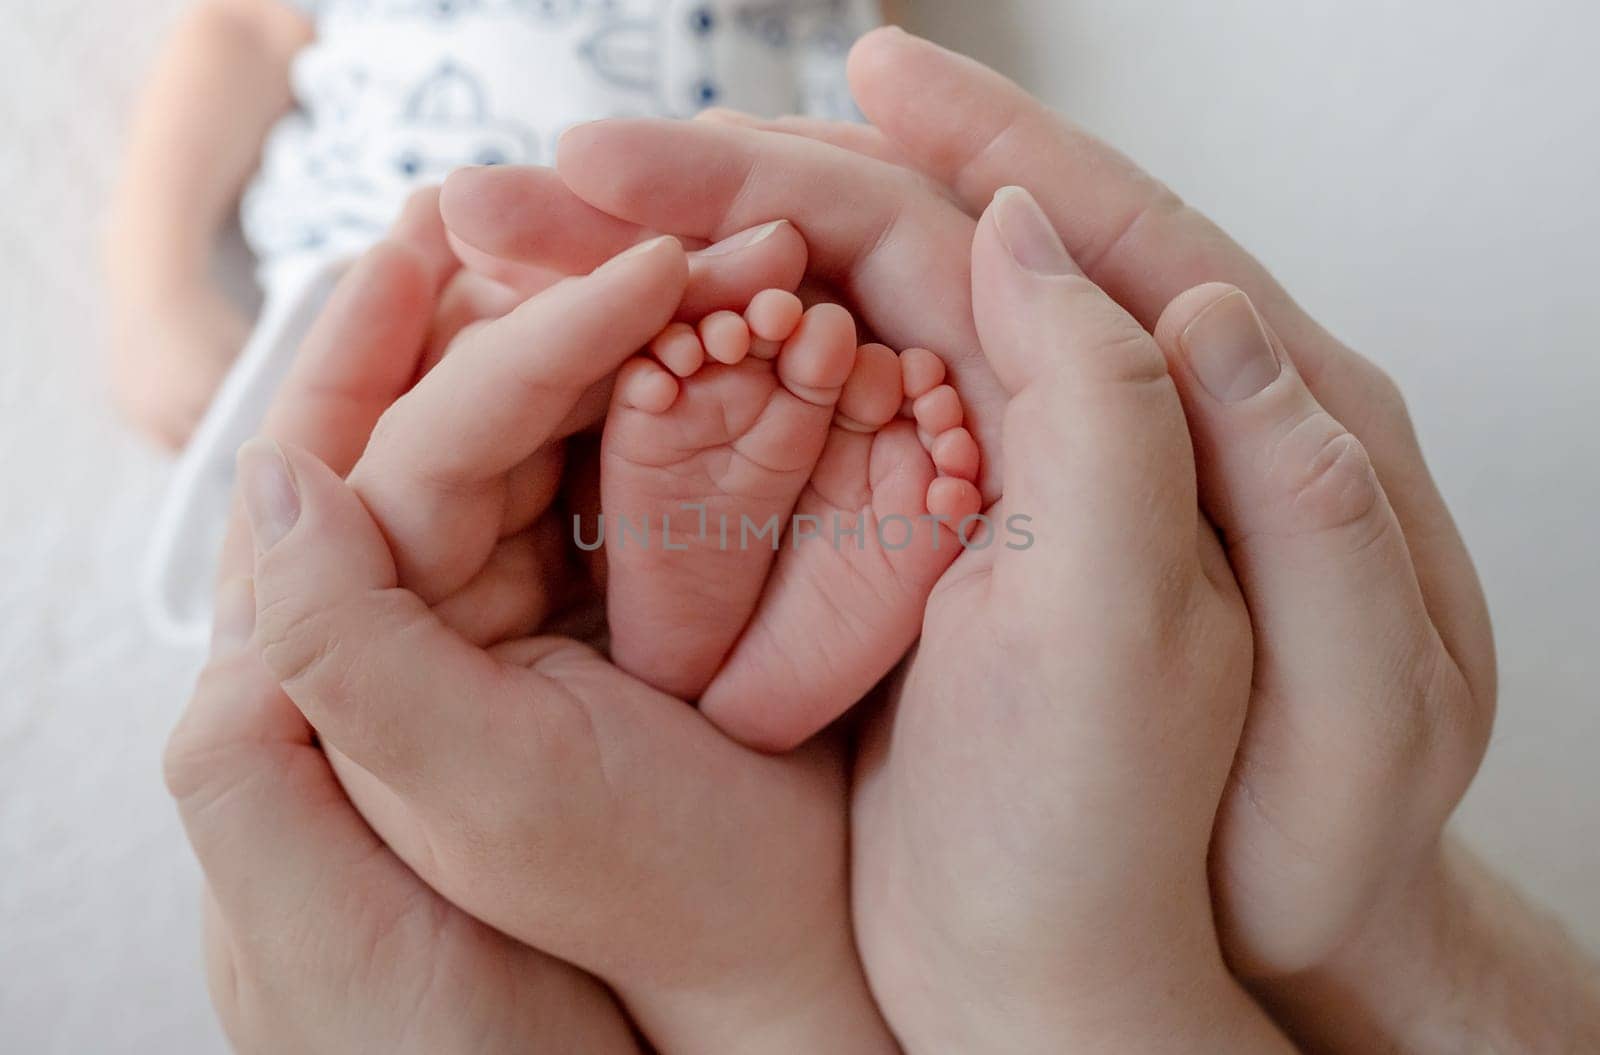 Newborn Baby'S Legs In Parents' Hands by tan4ikk1